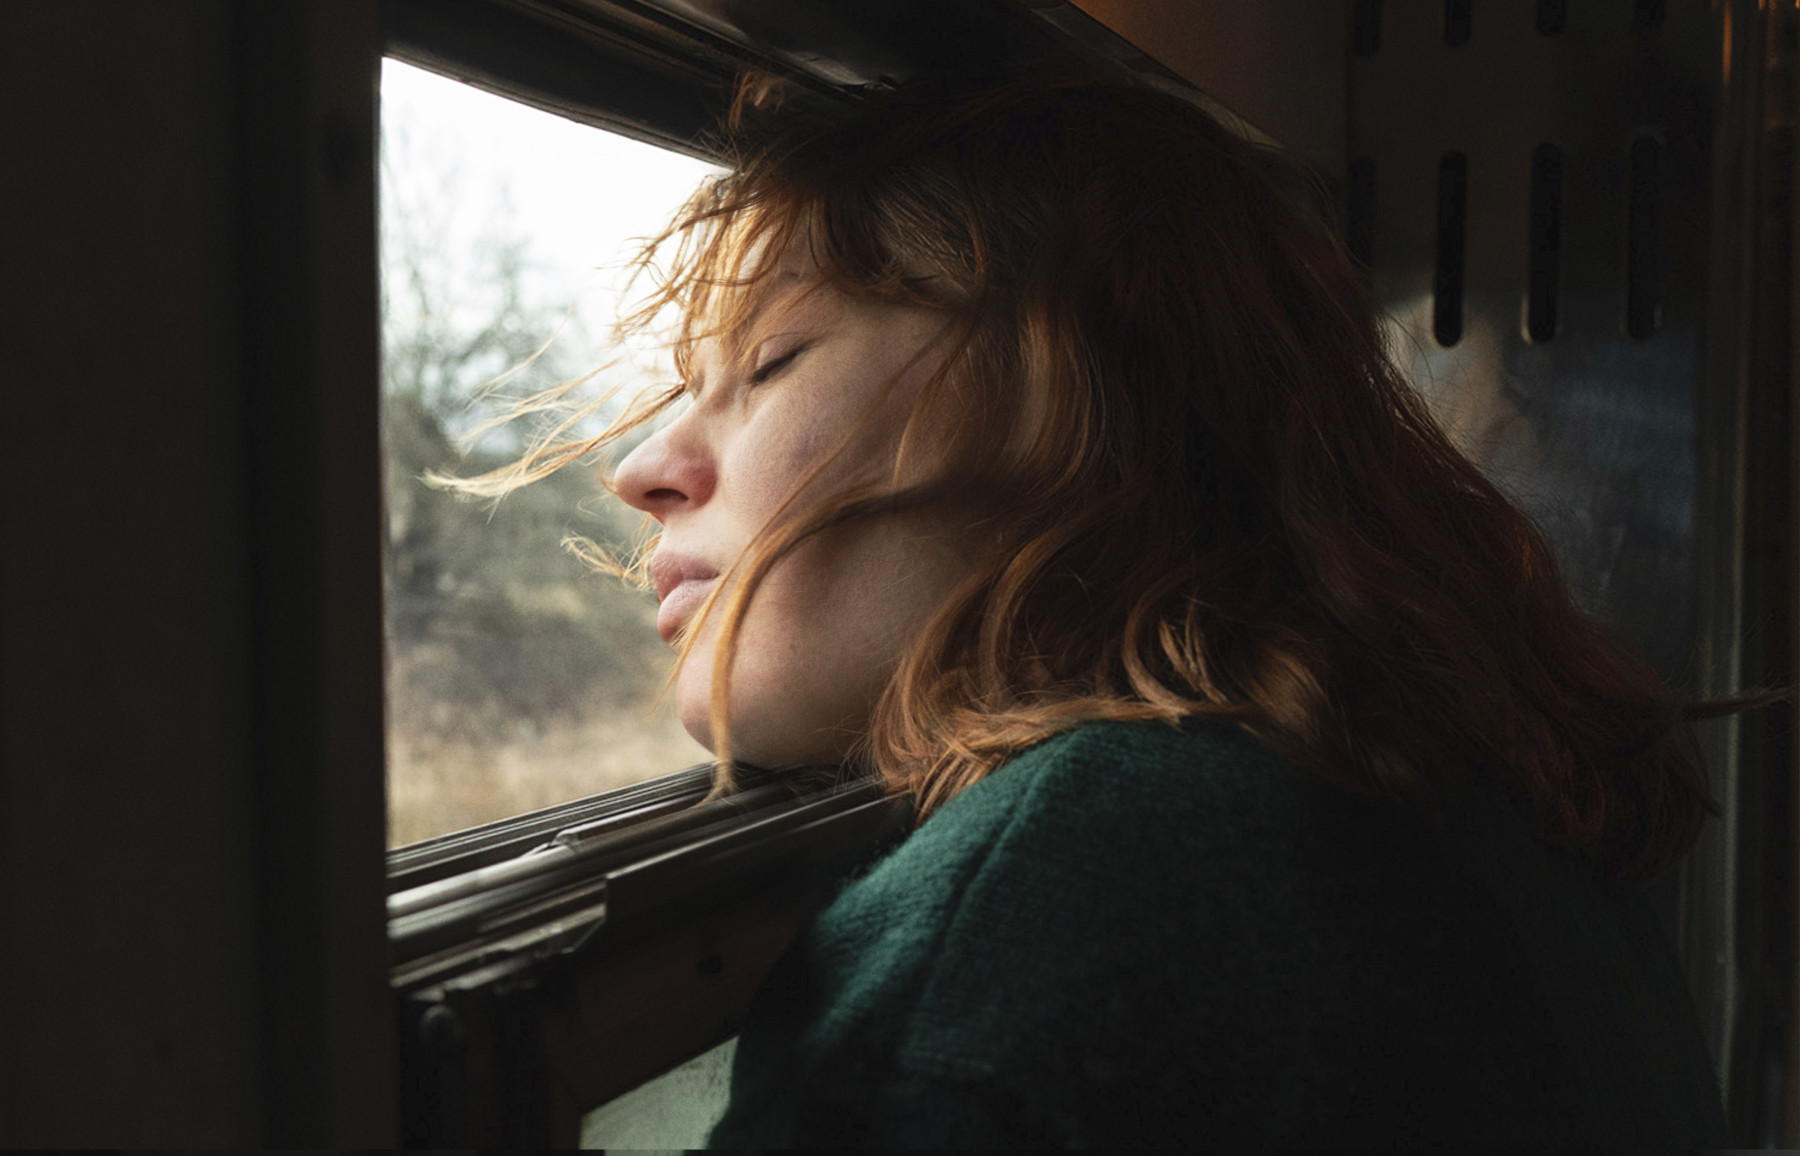 Com os olhos fechados, uma mulher deixa a brisa soprar seu cabelo em uma janela aberta de um trem.